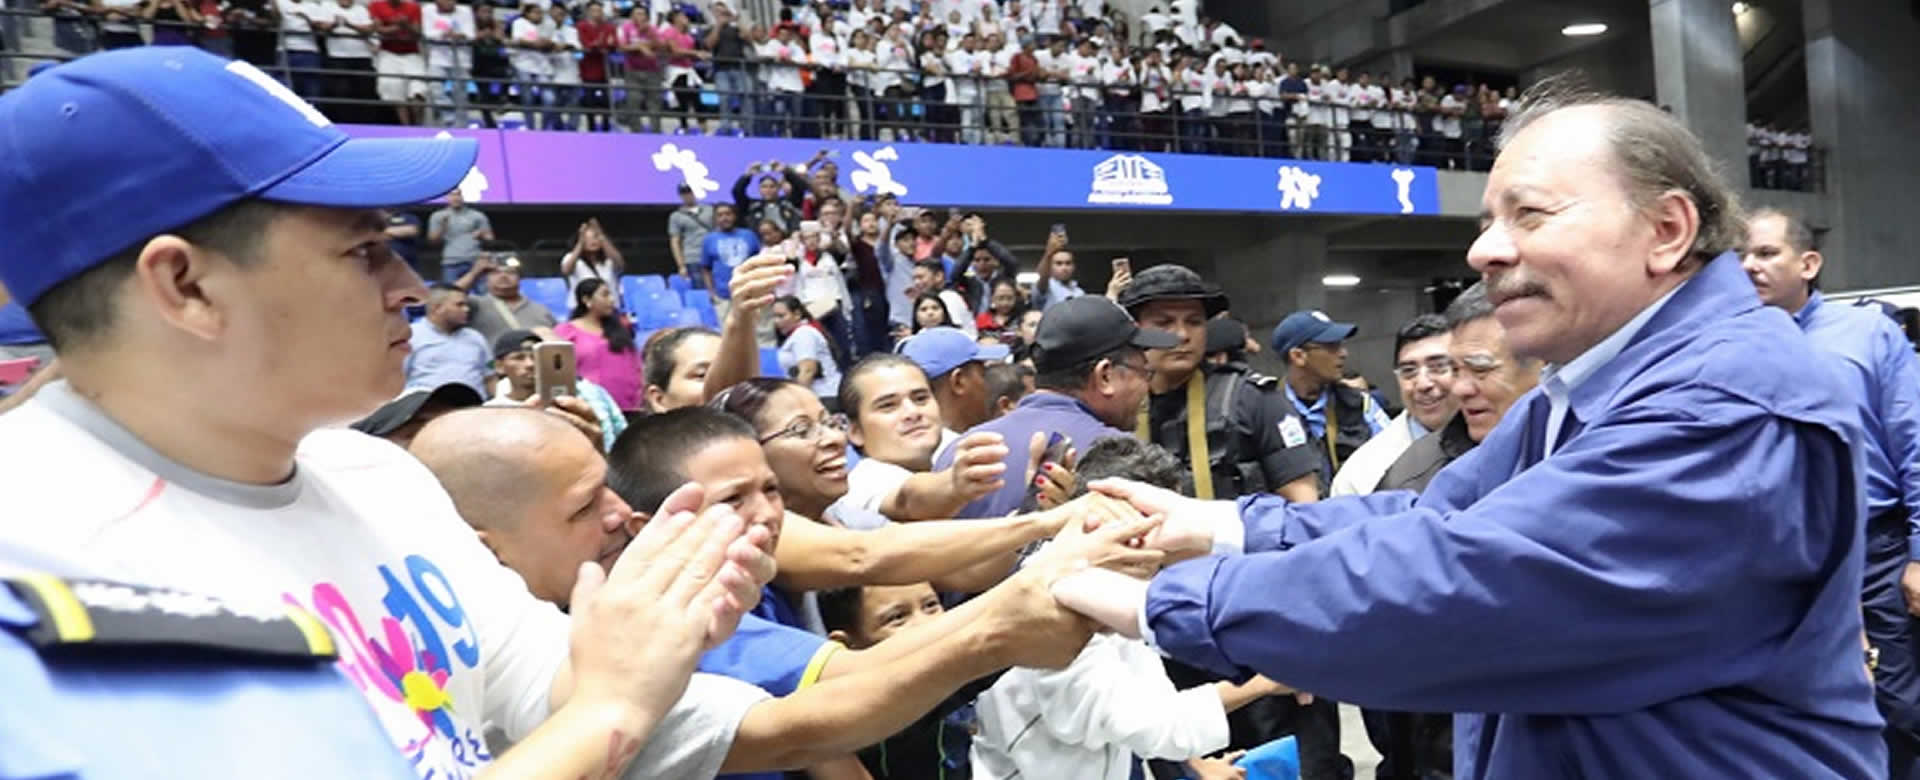 Daniel Ortega velada boxística